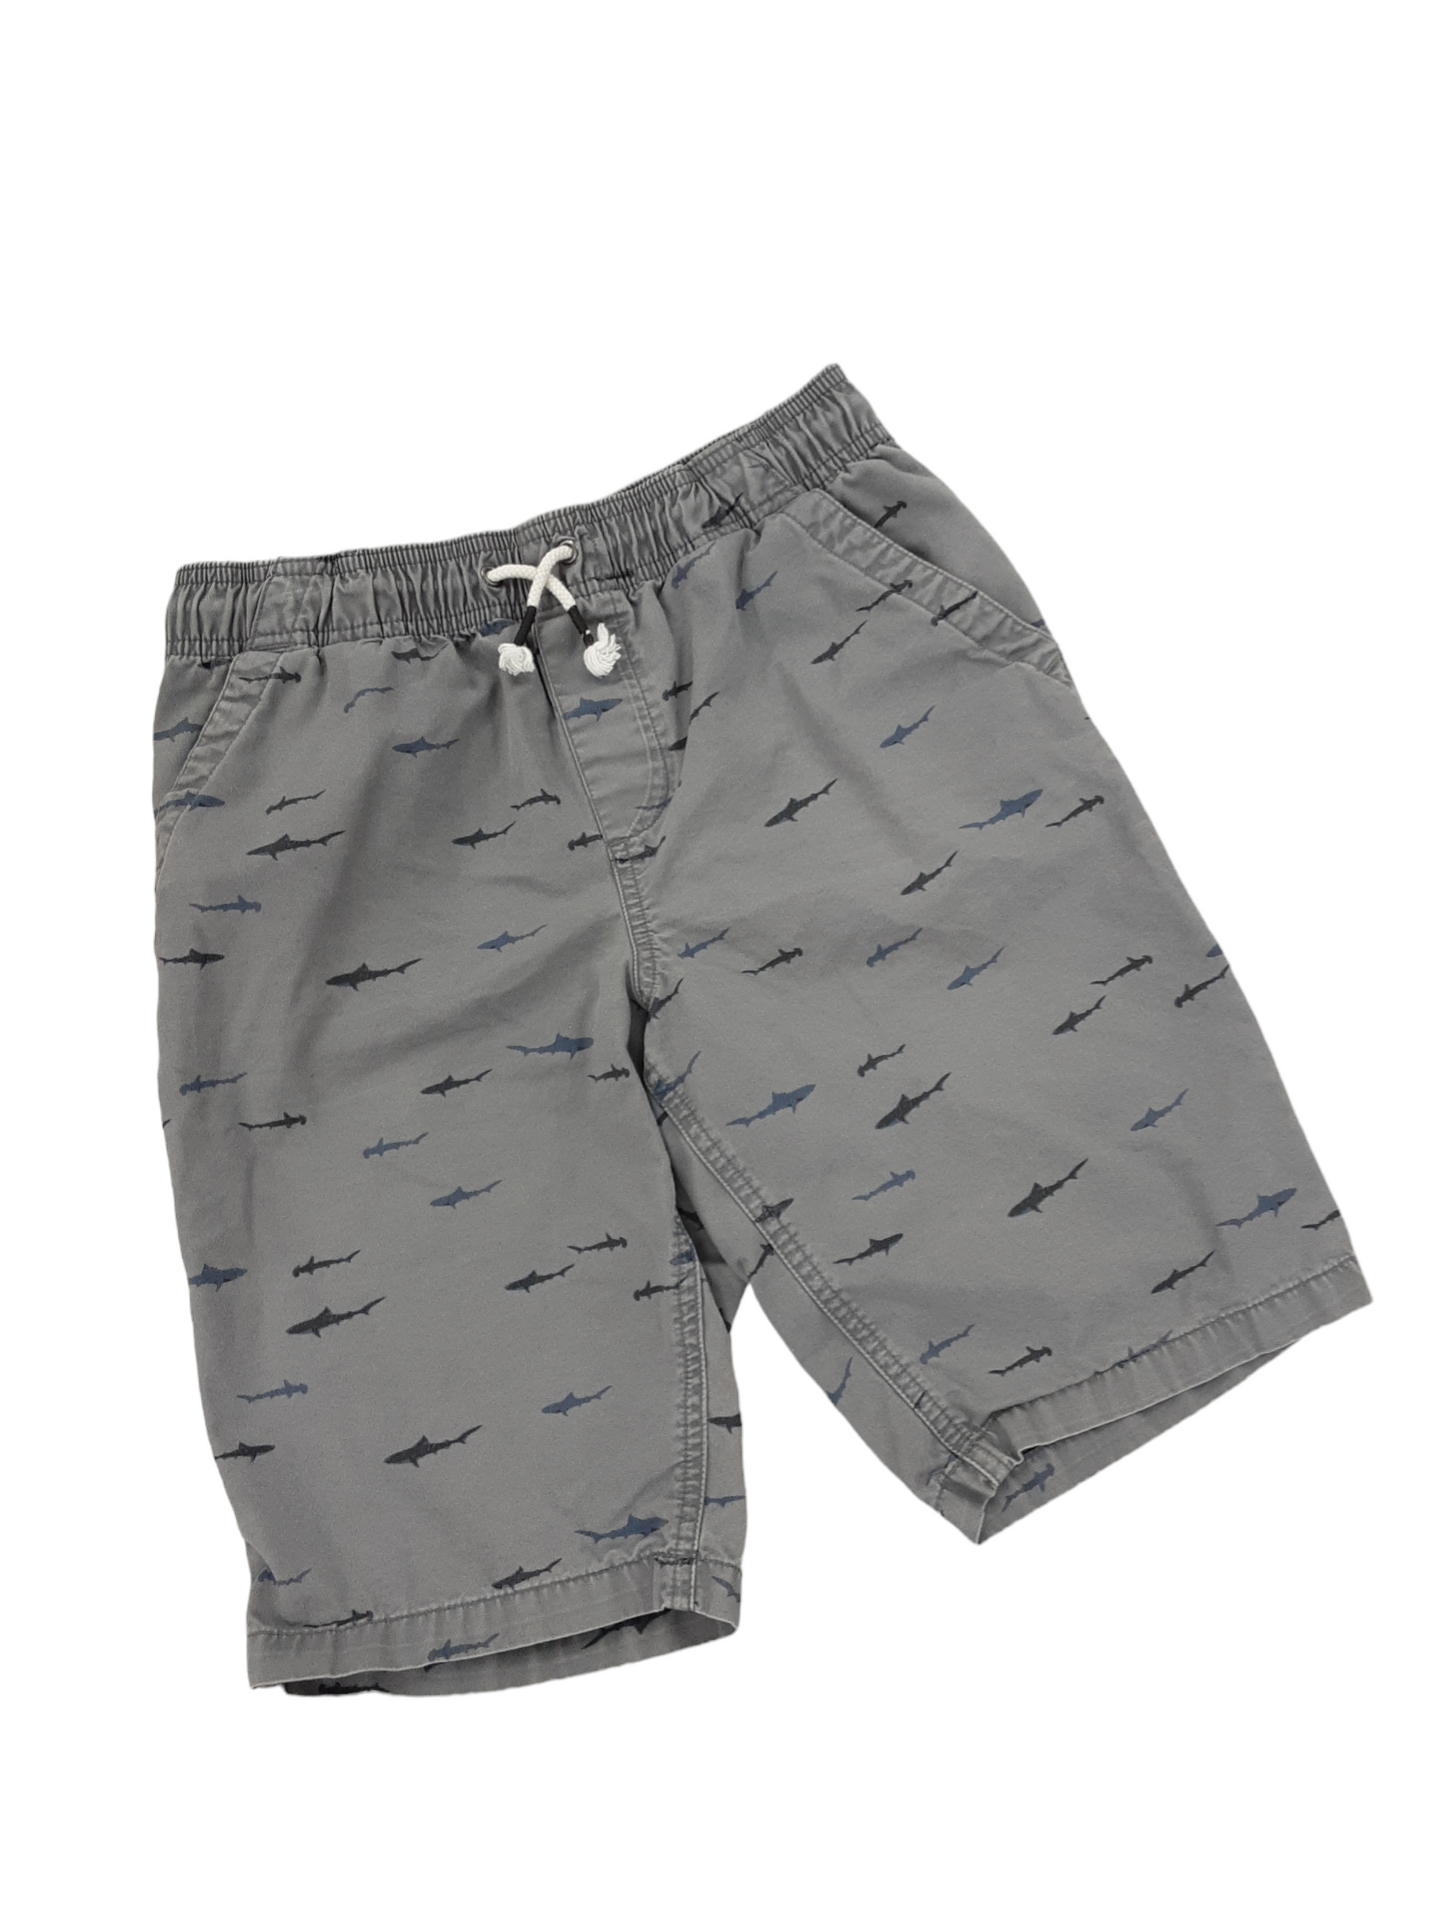 Size 10-12 shark shorts